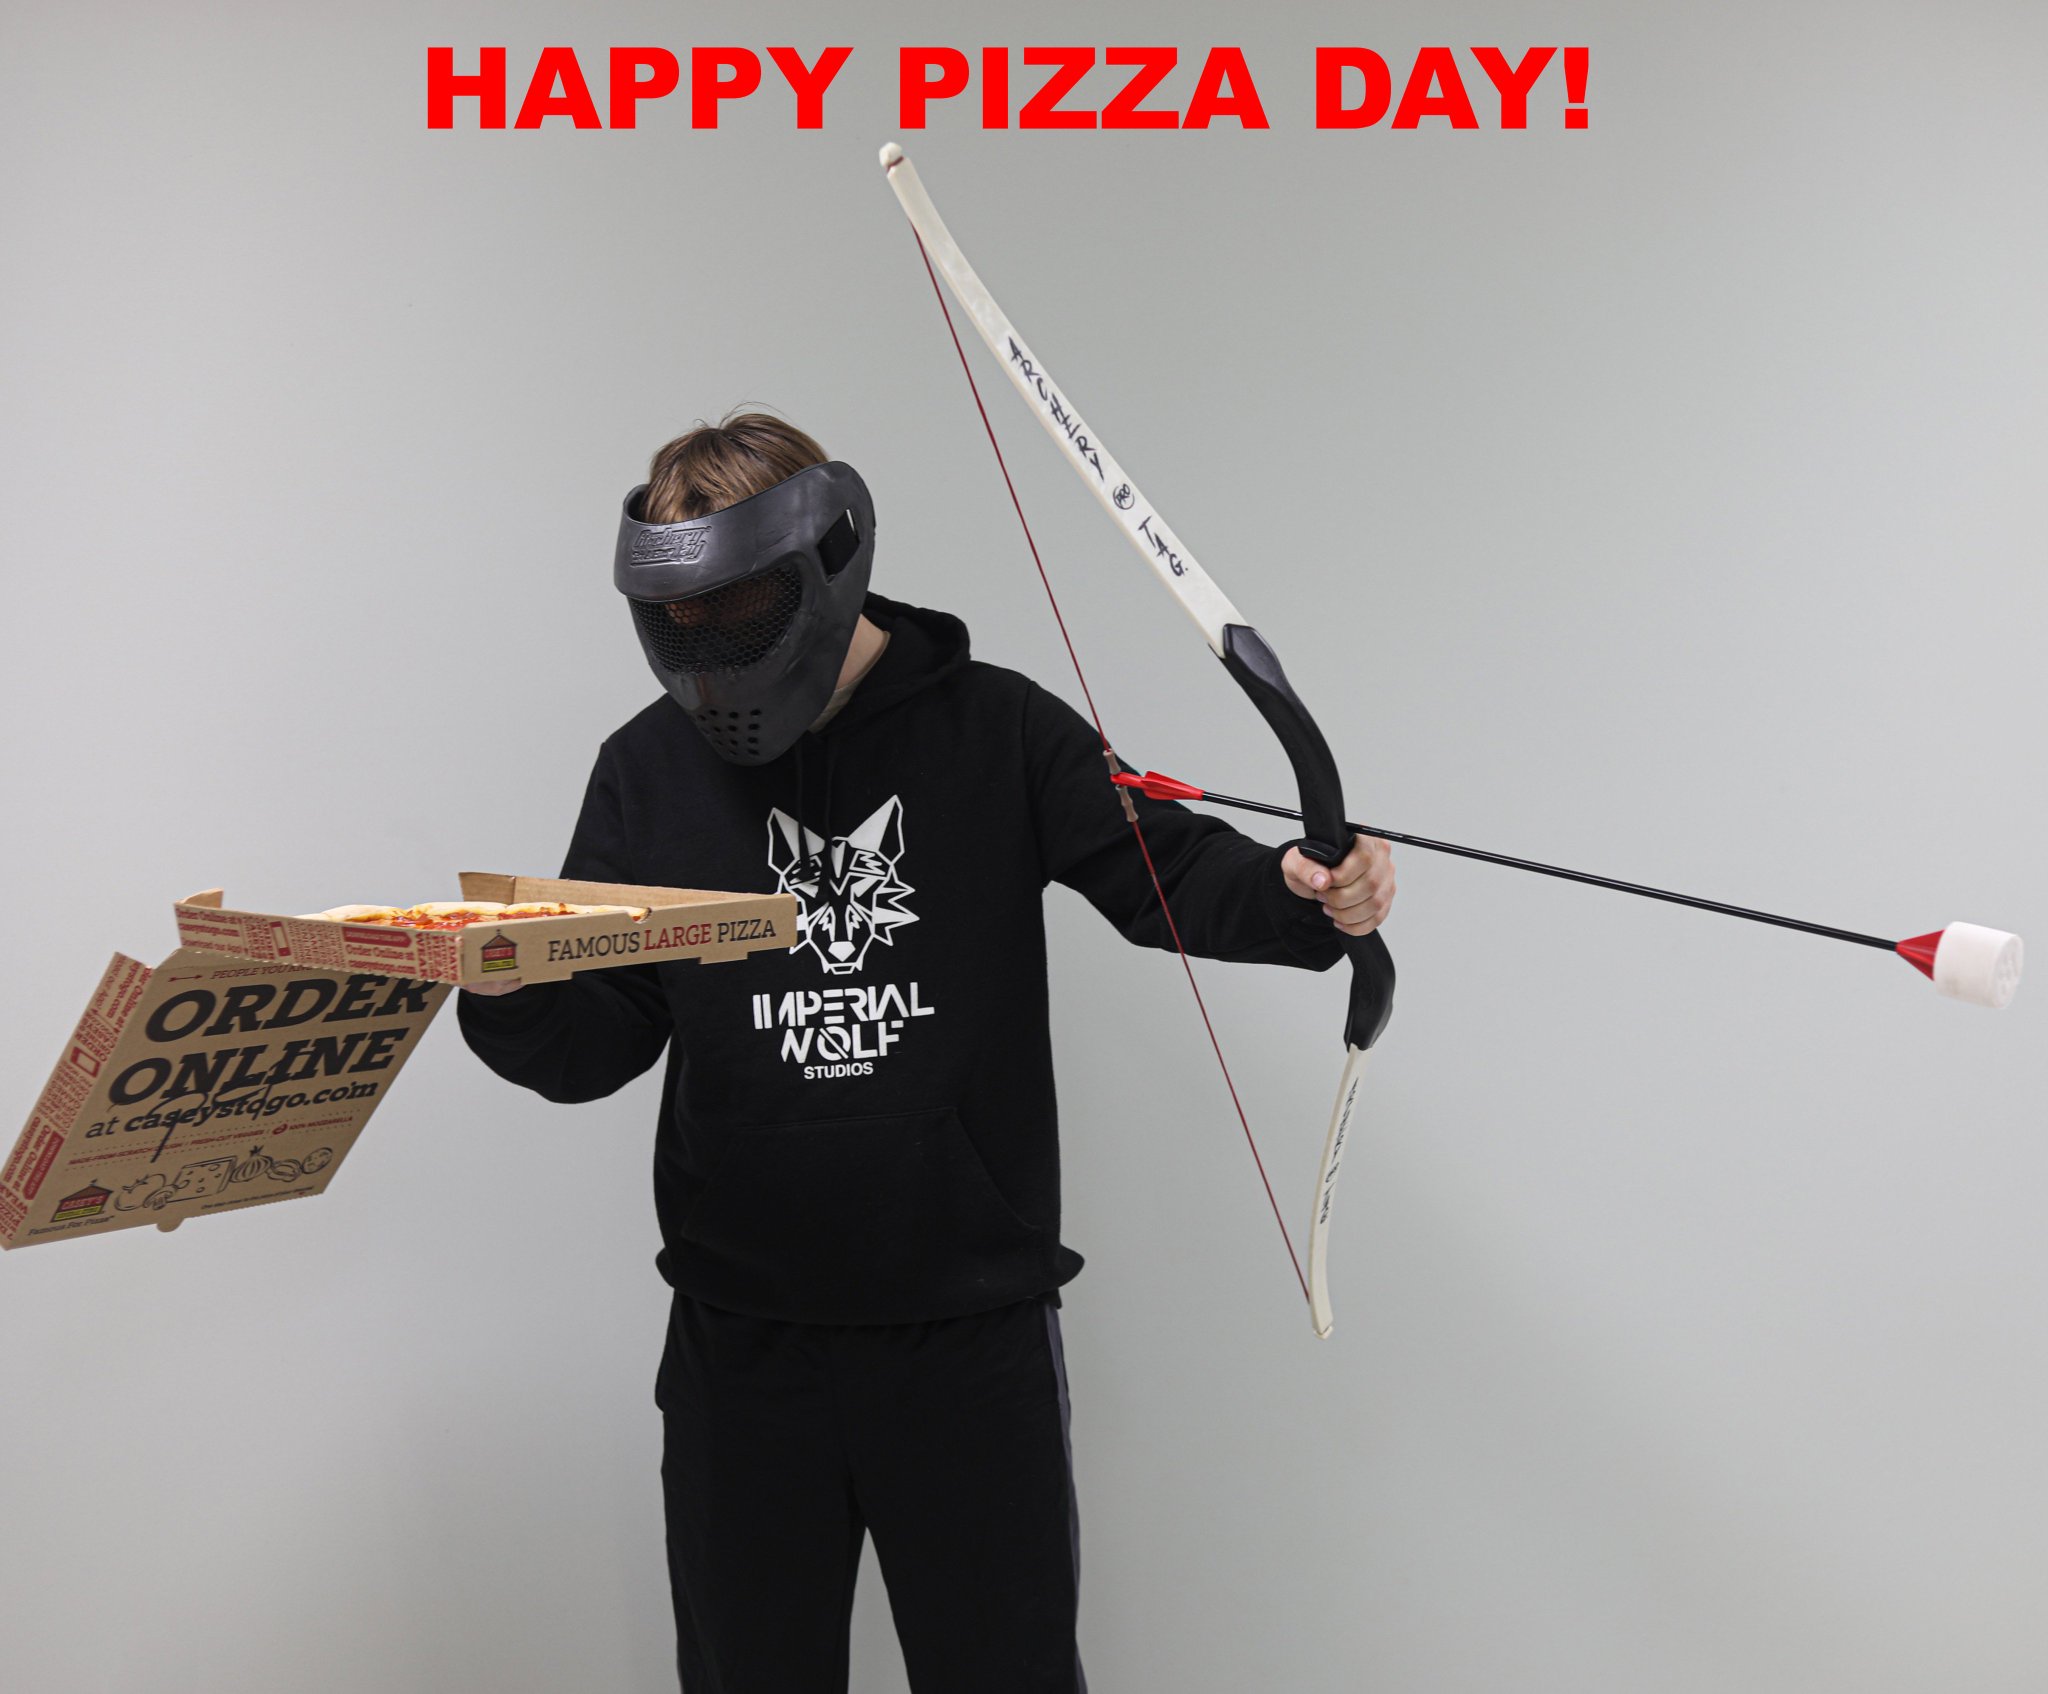 Archery Happy Pizza Day Globalarchery Pizzaday Archerytag Extremearchery Safearchery Sports Sport Pizza